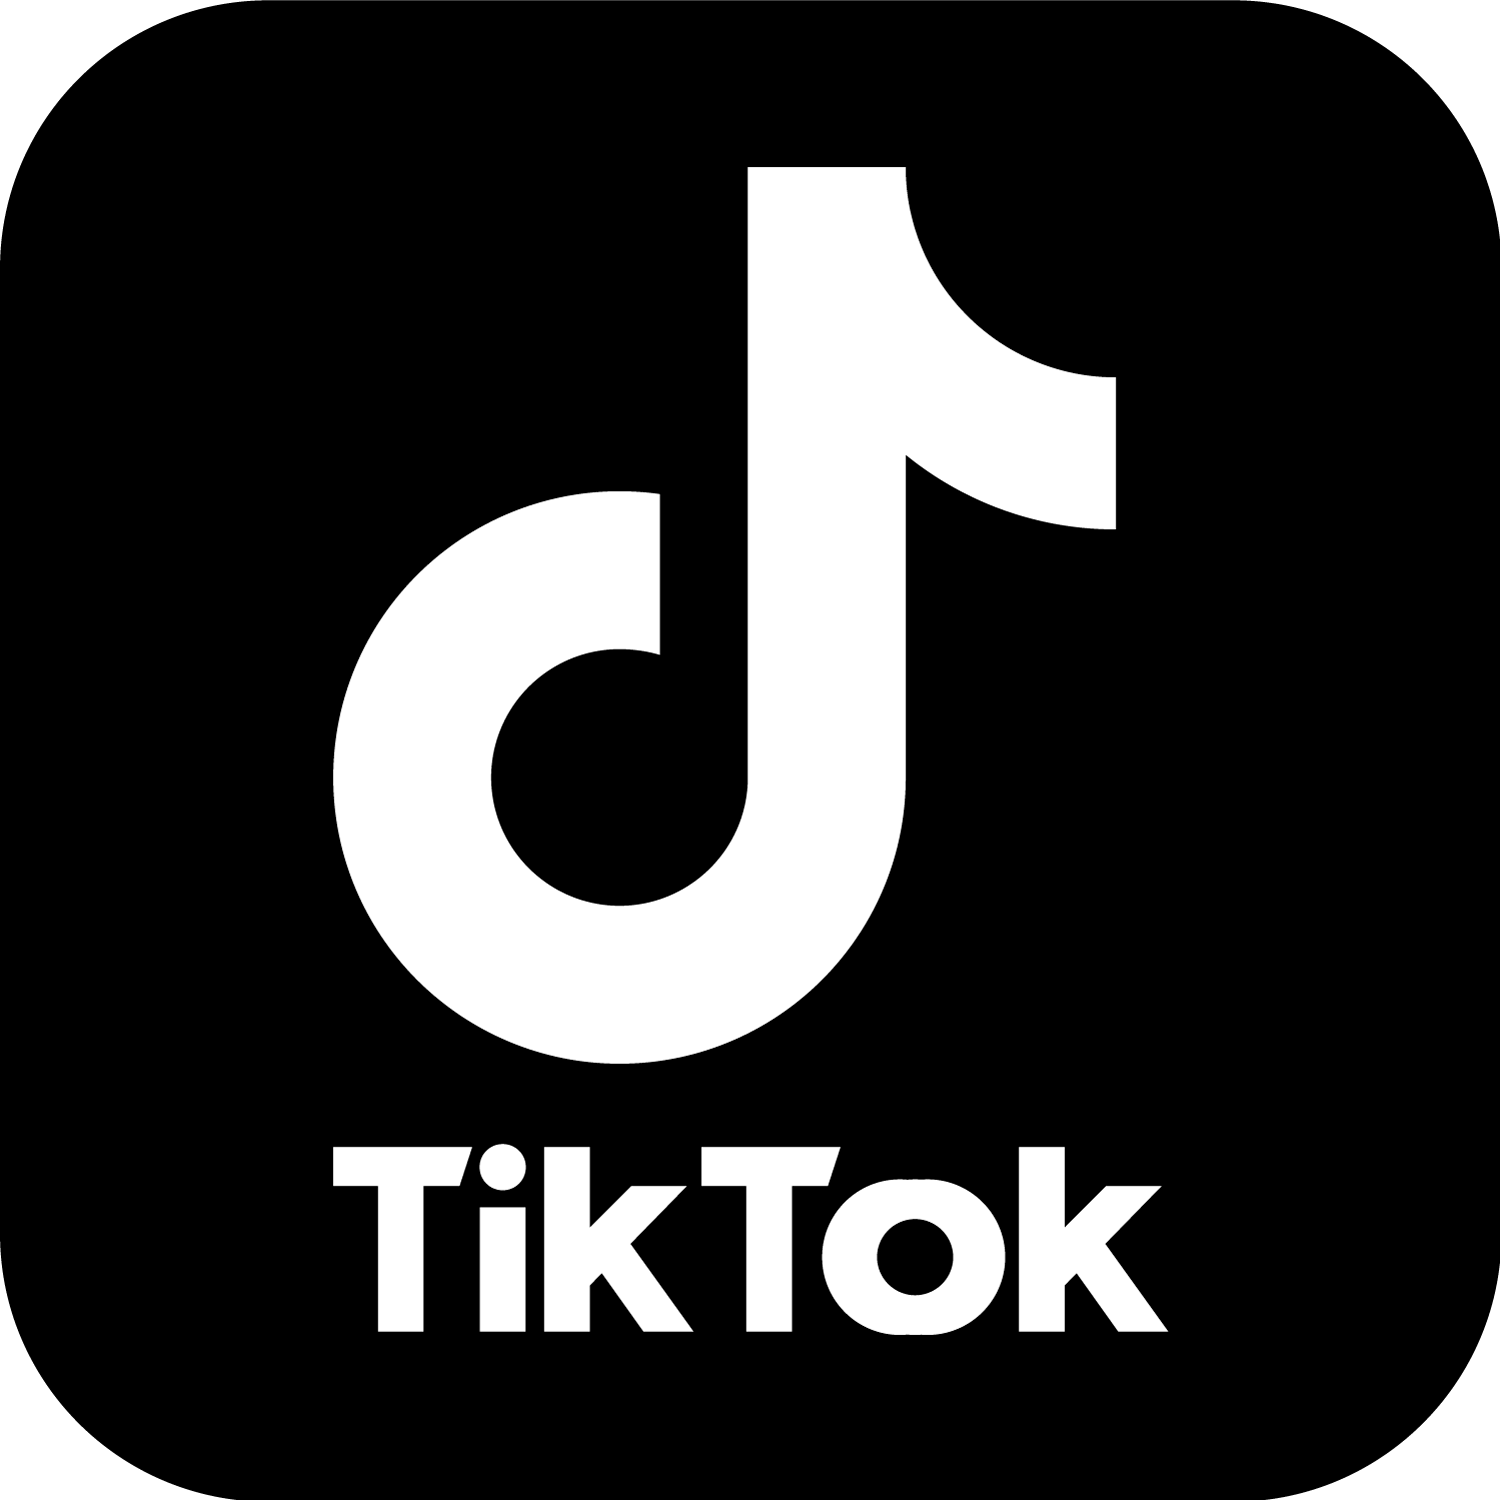 TikTok Logo Black And White